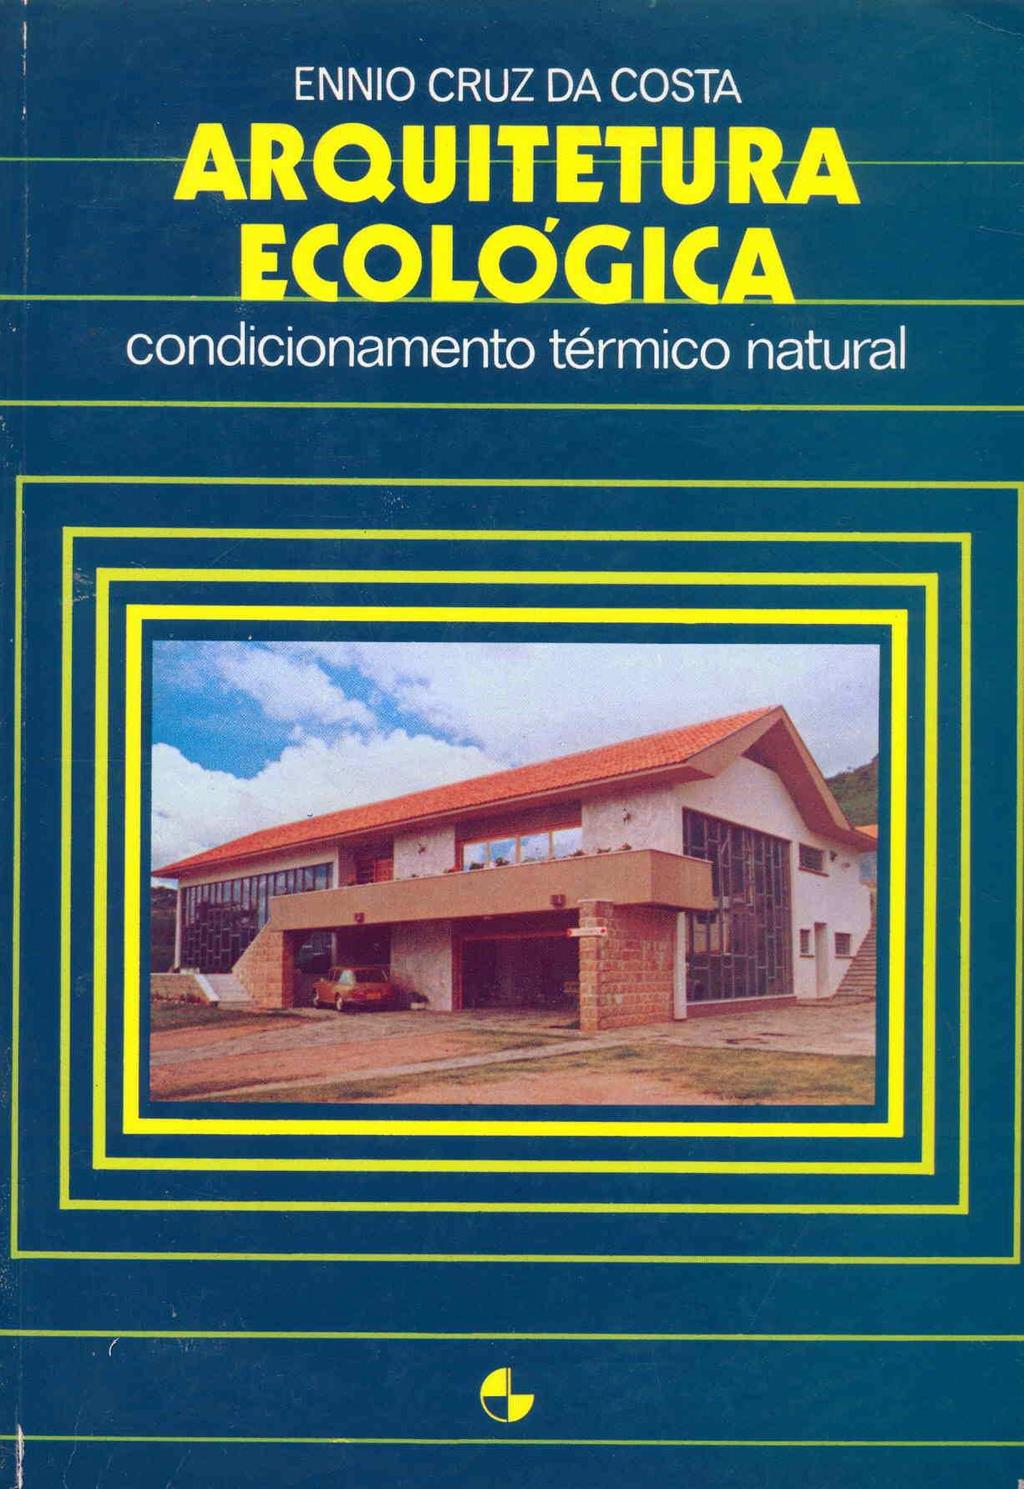 Ennio Cruz da Costa Arquitetura Ecológica (Editora E.